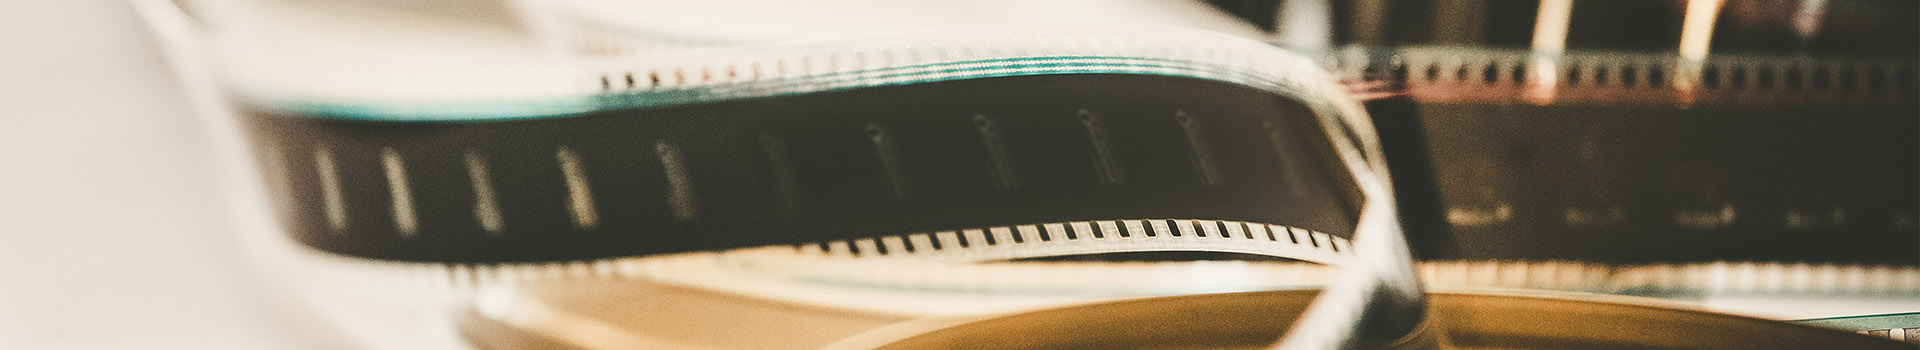 Bobina de pel·lícula de cinema o tira de pel·lícula, imatge de primer pla